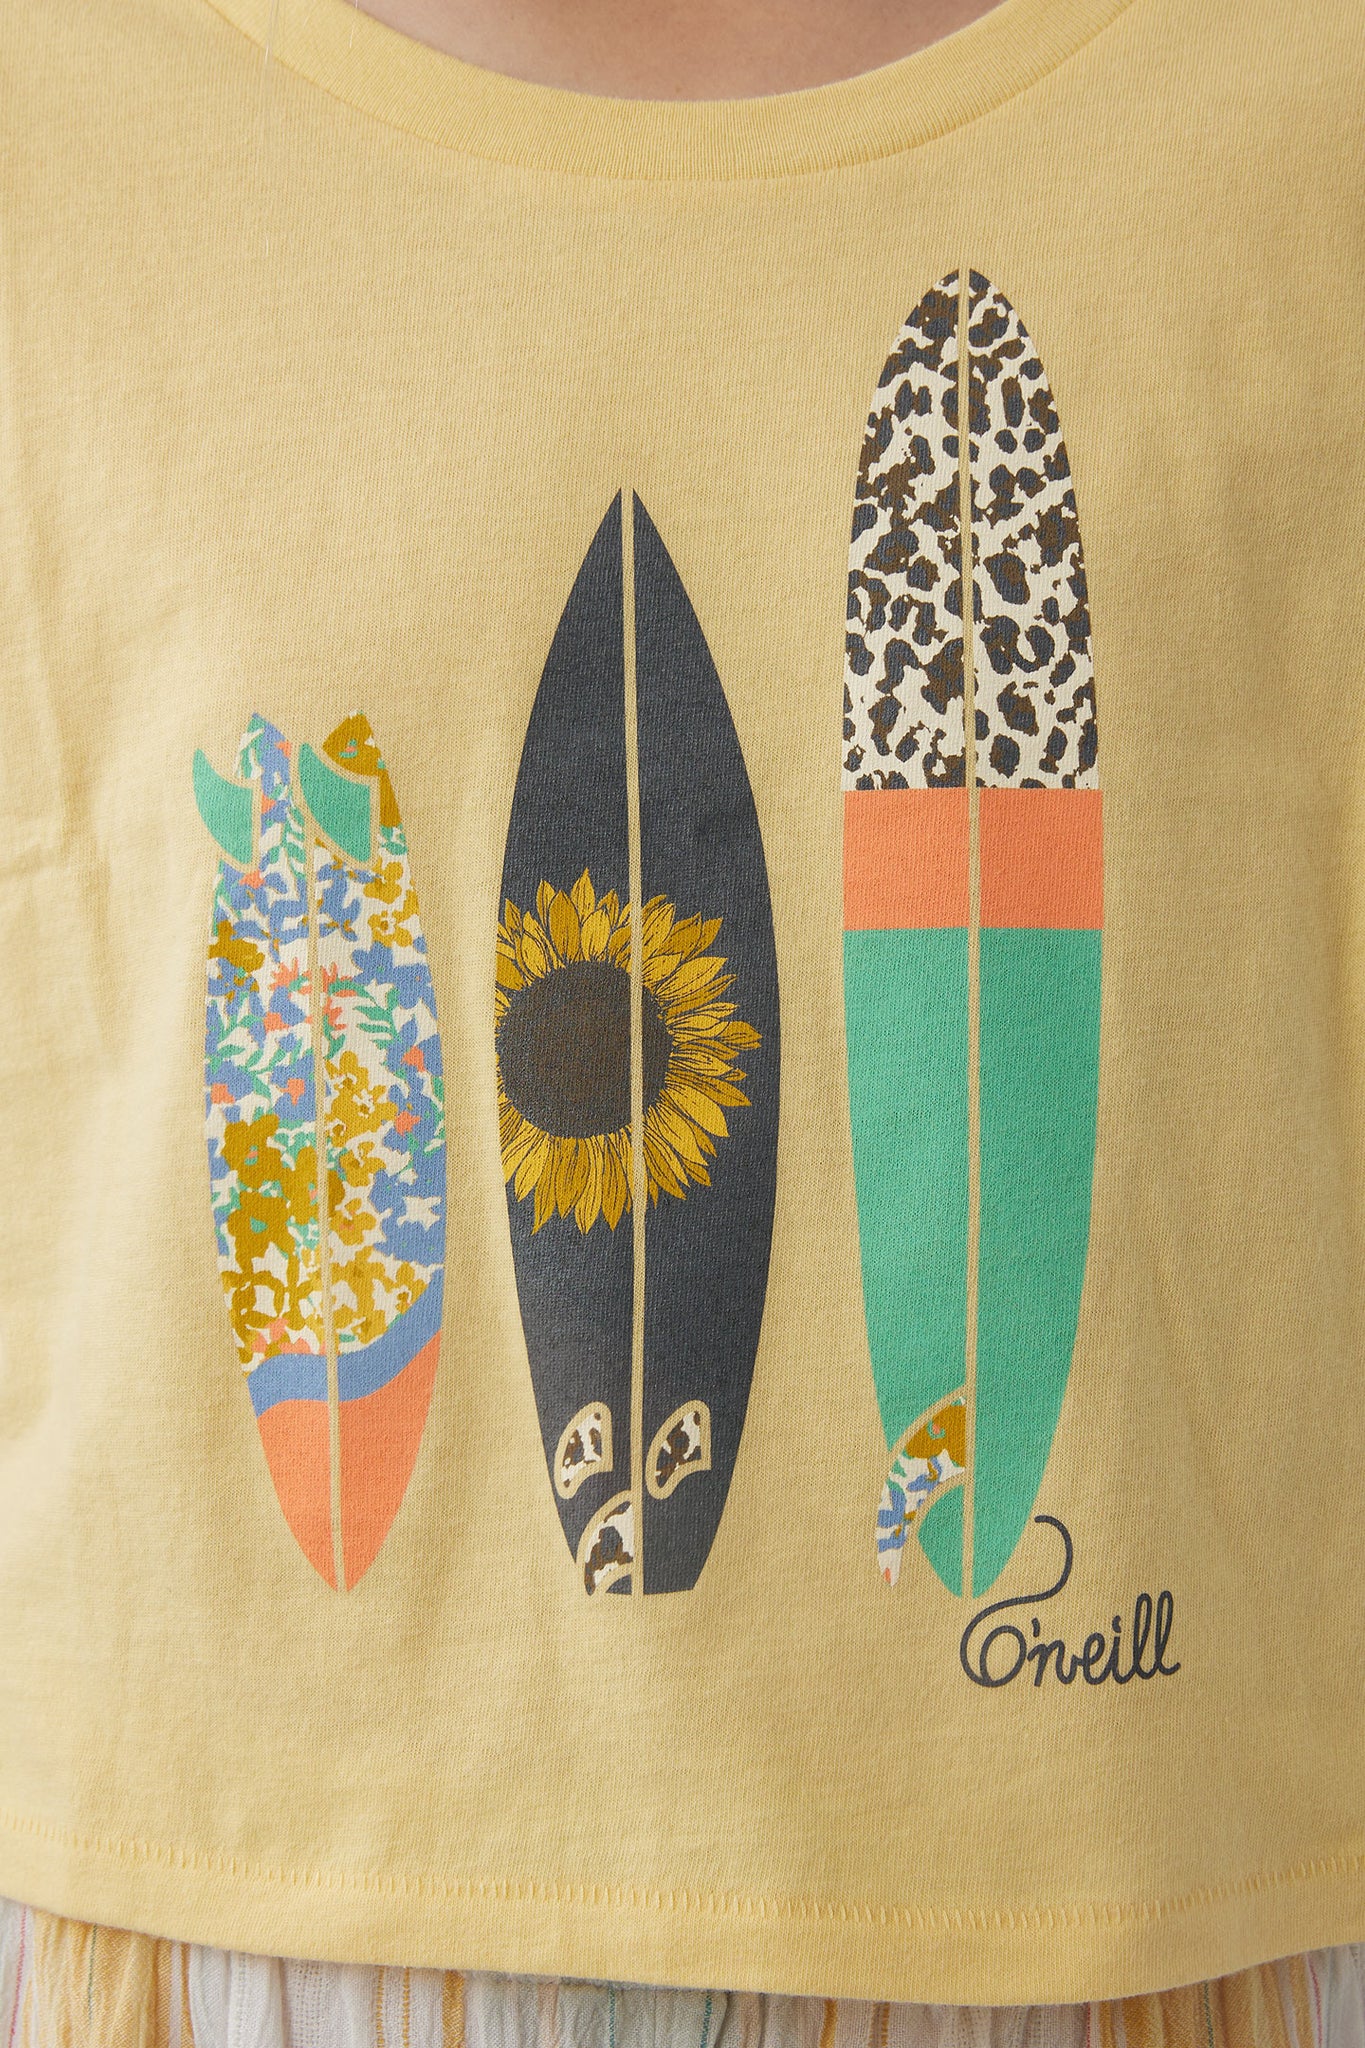 GIRL'S BONITA SURFBOARDS TEE